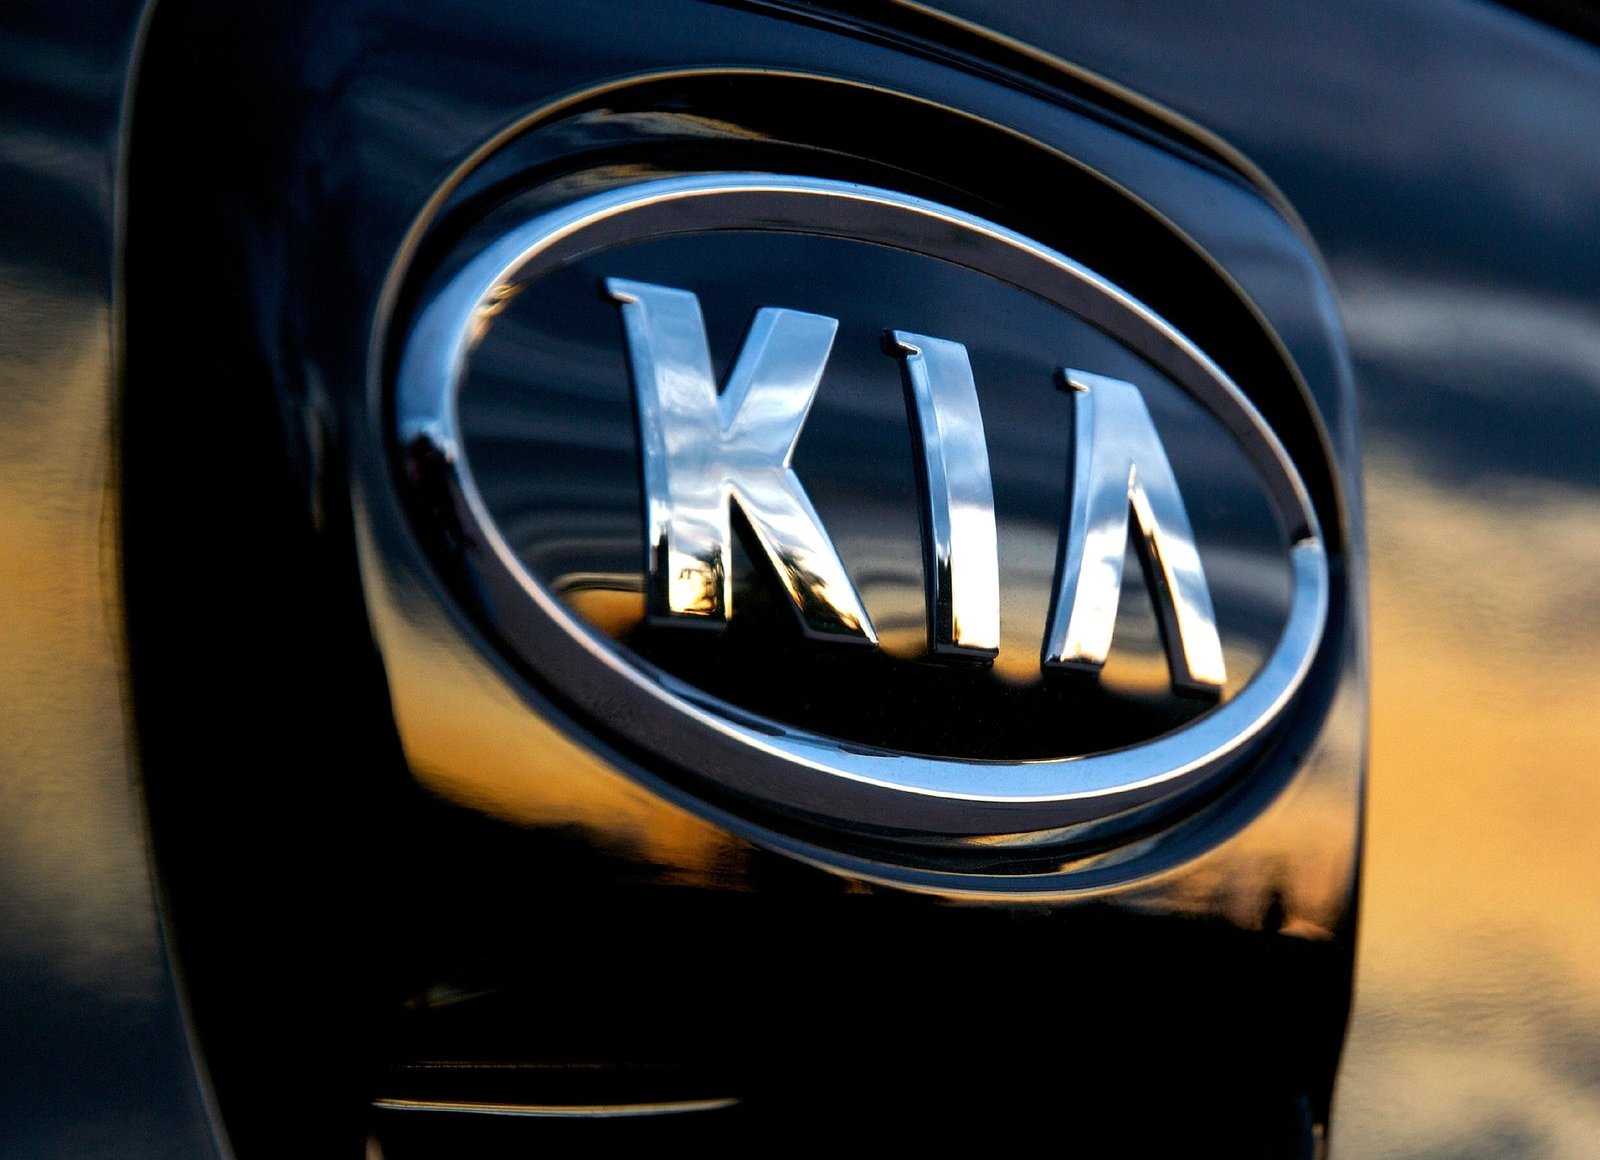 Автомобили kia — популярные модели на российском рынке